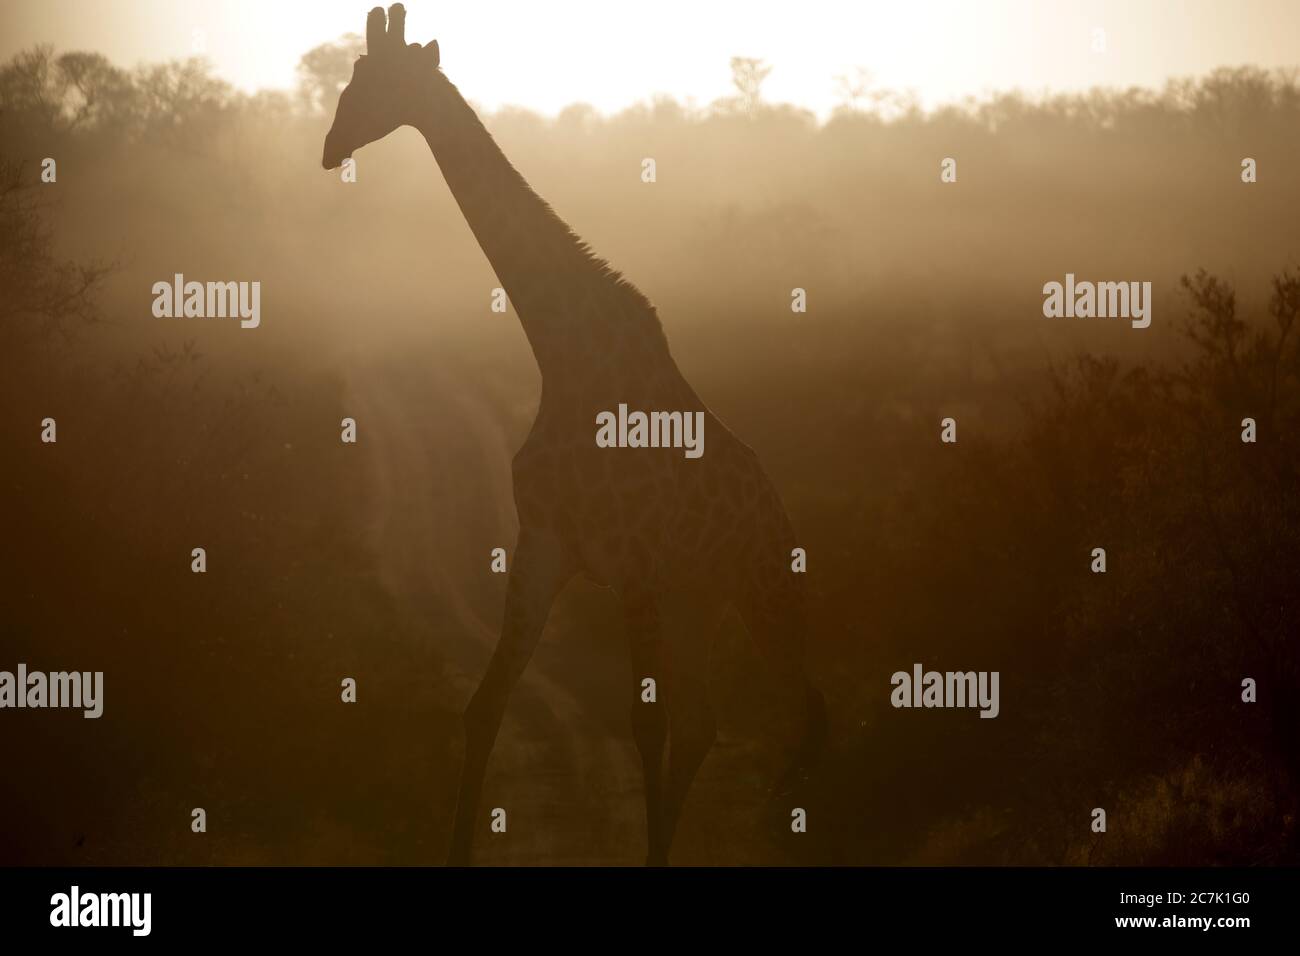 Giraffe, Giraffa camelopardalis, im Krüger National Park, Südafrika, ist die Giraffe ein afrikanisches, gleichgezogenes Huftier-Säugetier, das höchste lebende Landtier und das größte Wiederkäuer, Stockfoto